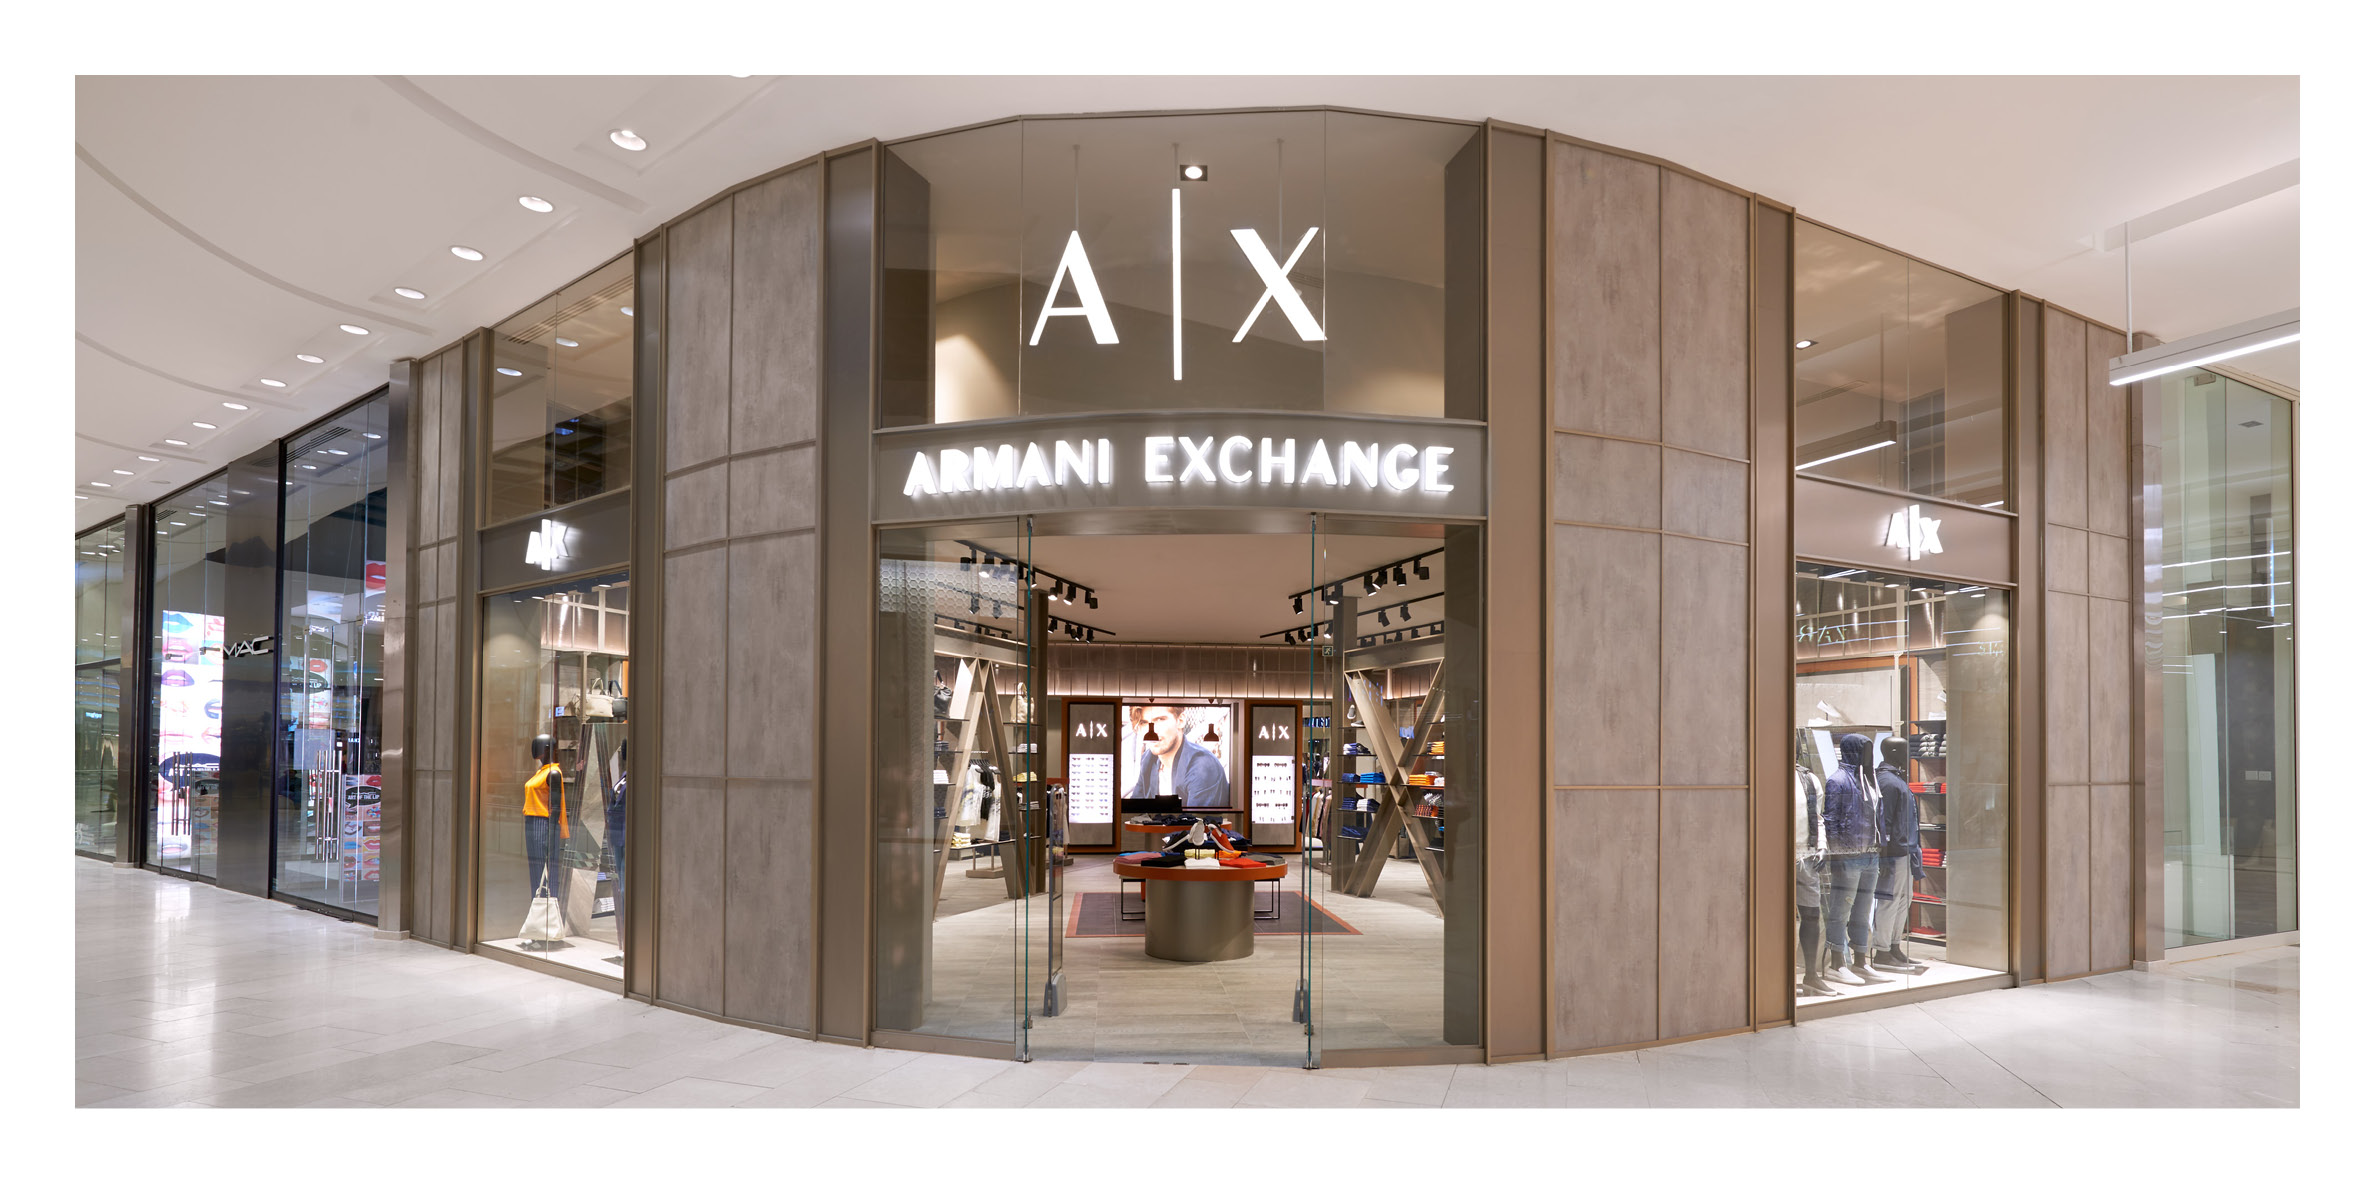 armani exchange mall